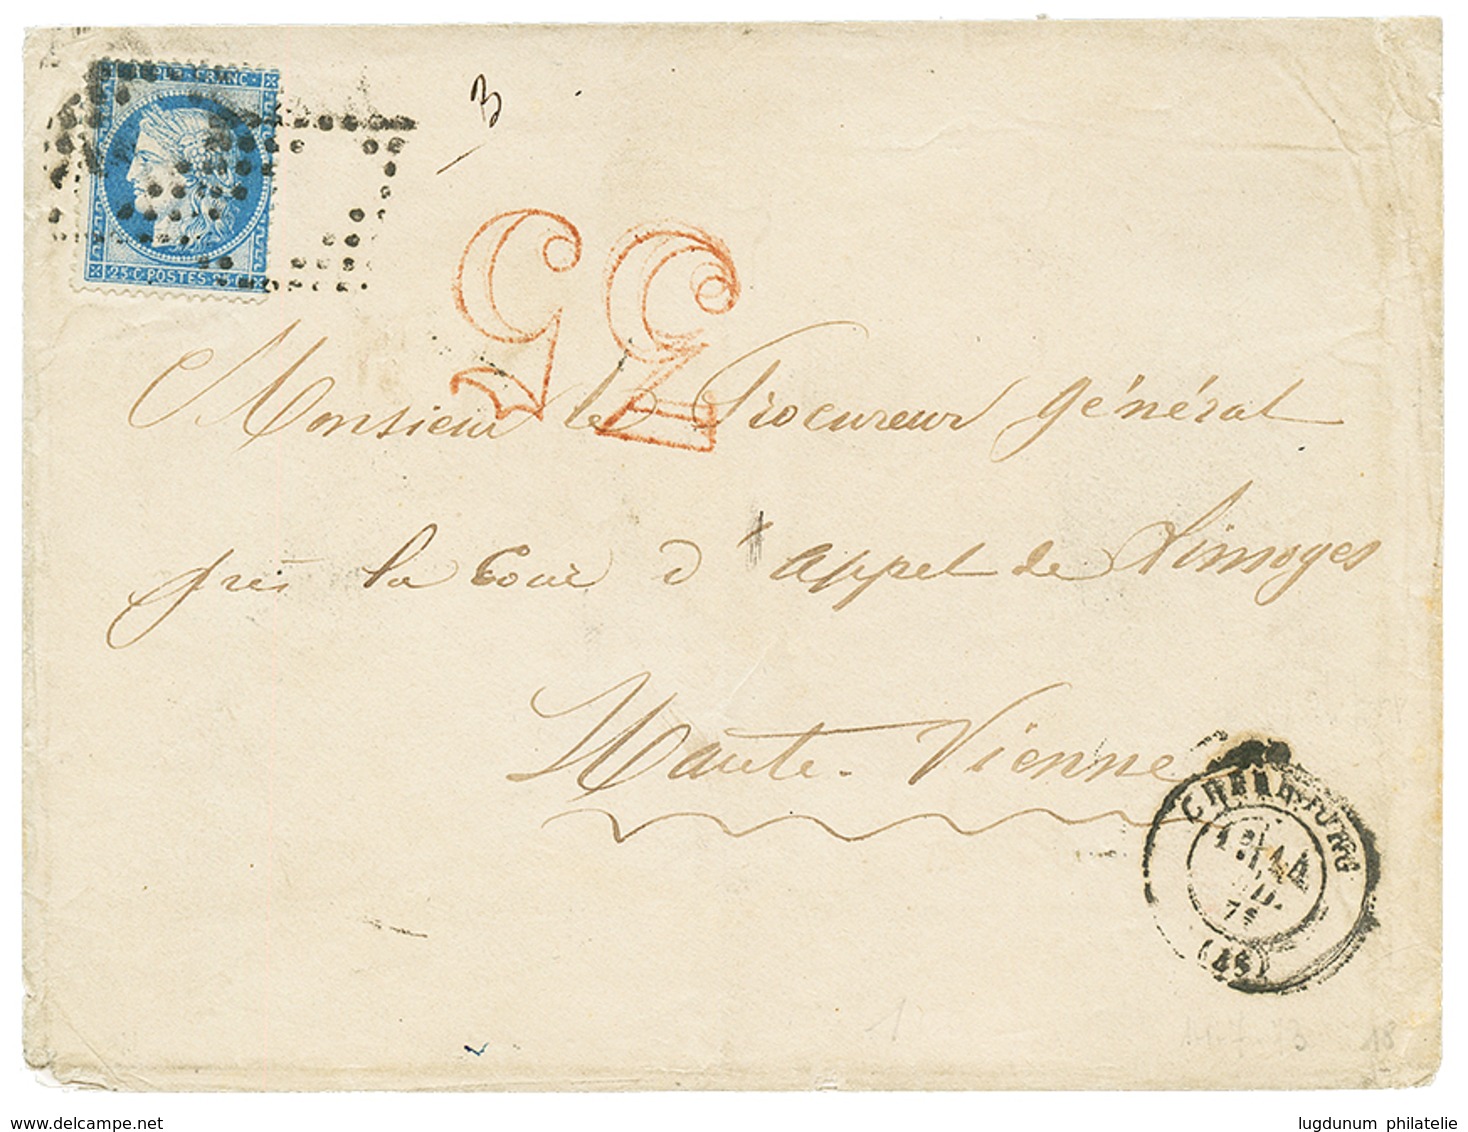 "Taxe Spéciale De CHERBOURG" : 1873 25c(n°60) Obl. Cachet évidé + Taxe 35 D.T En Rouge Sur Enveloppe De CHERBOURG. RARET - 1871-1875 Ceres